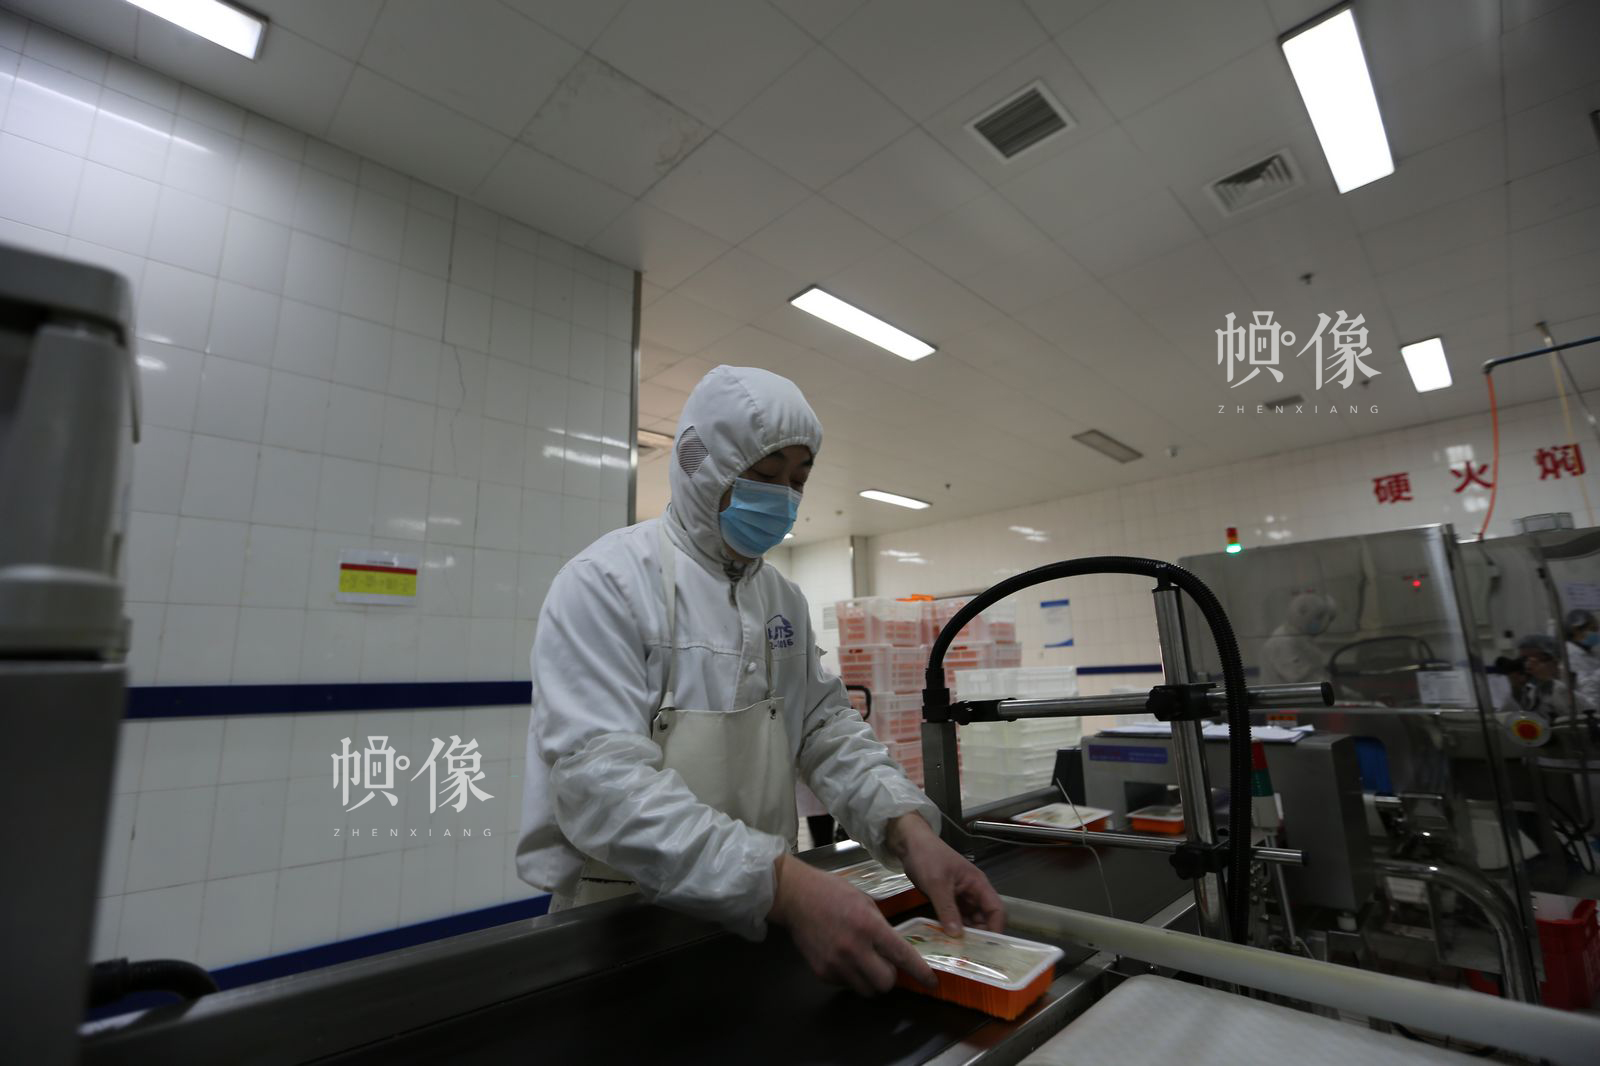 工人将成型的米饭放入检测流水线做相关检测。中国网记者 吴闻达 摄